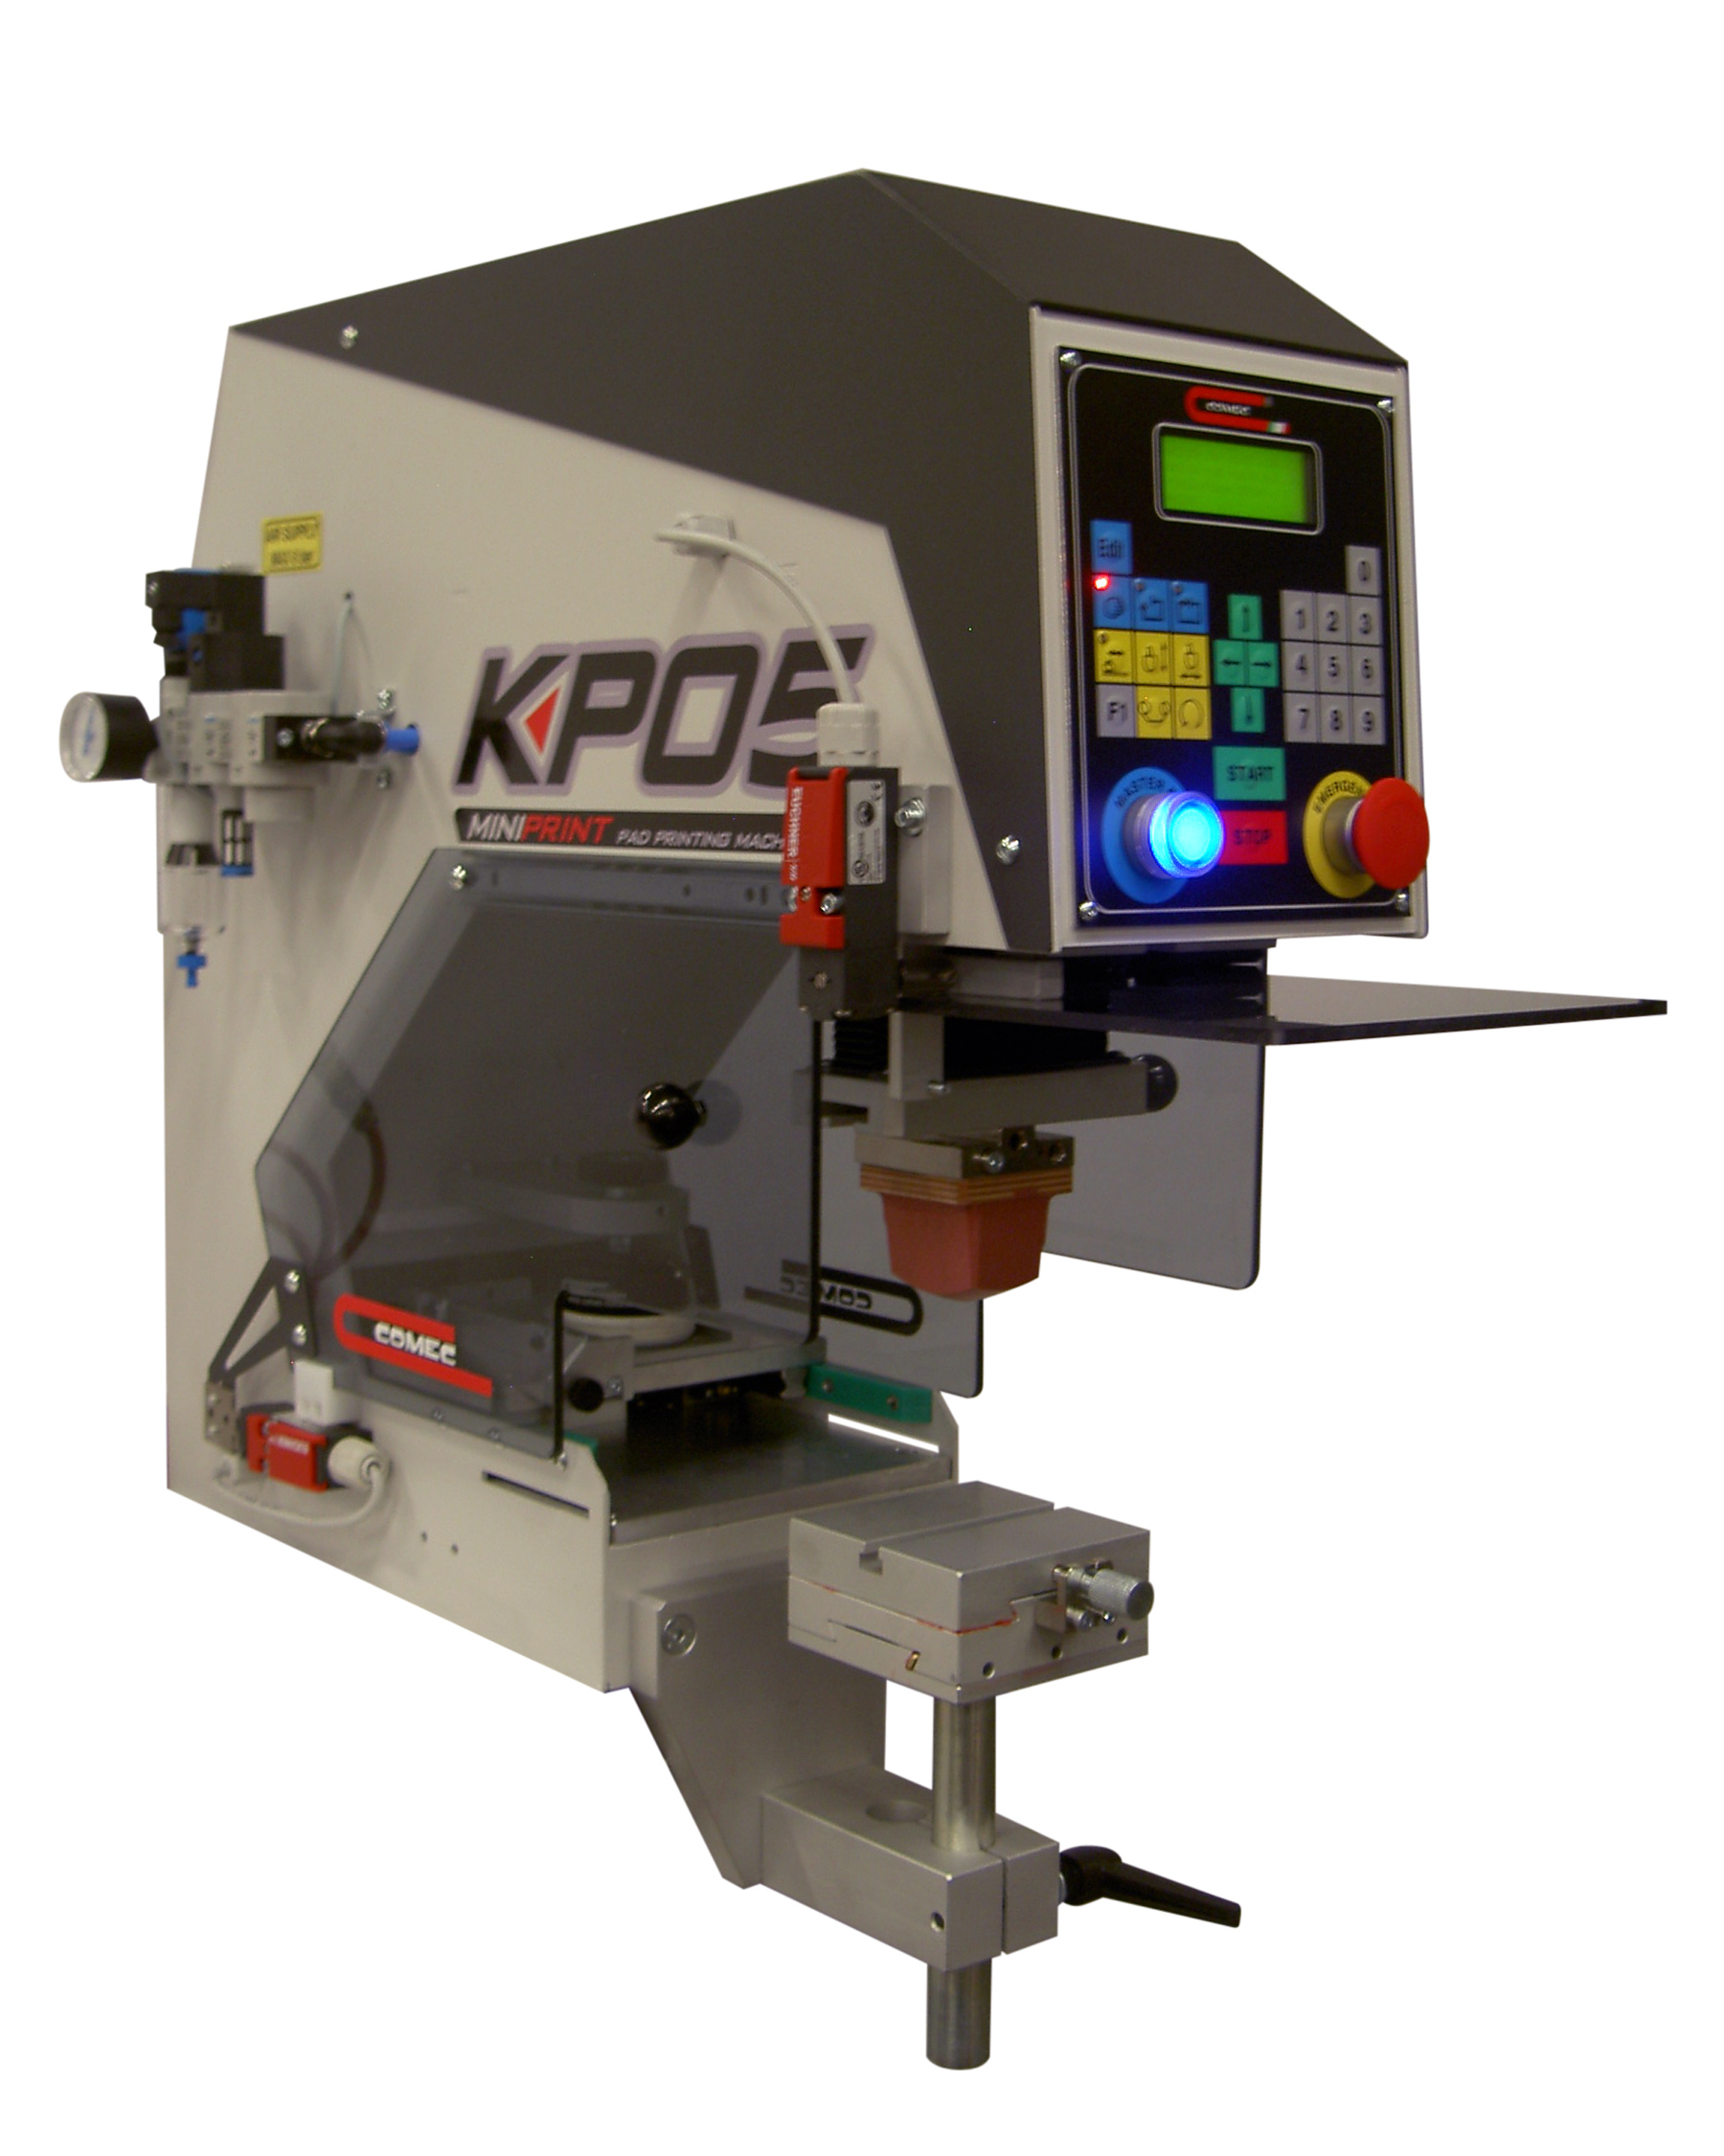 KP05 1C pad printing machine Comec Italia